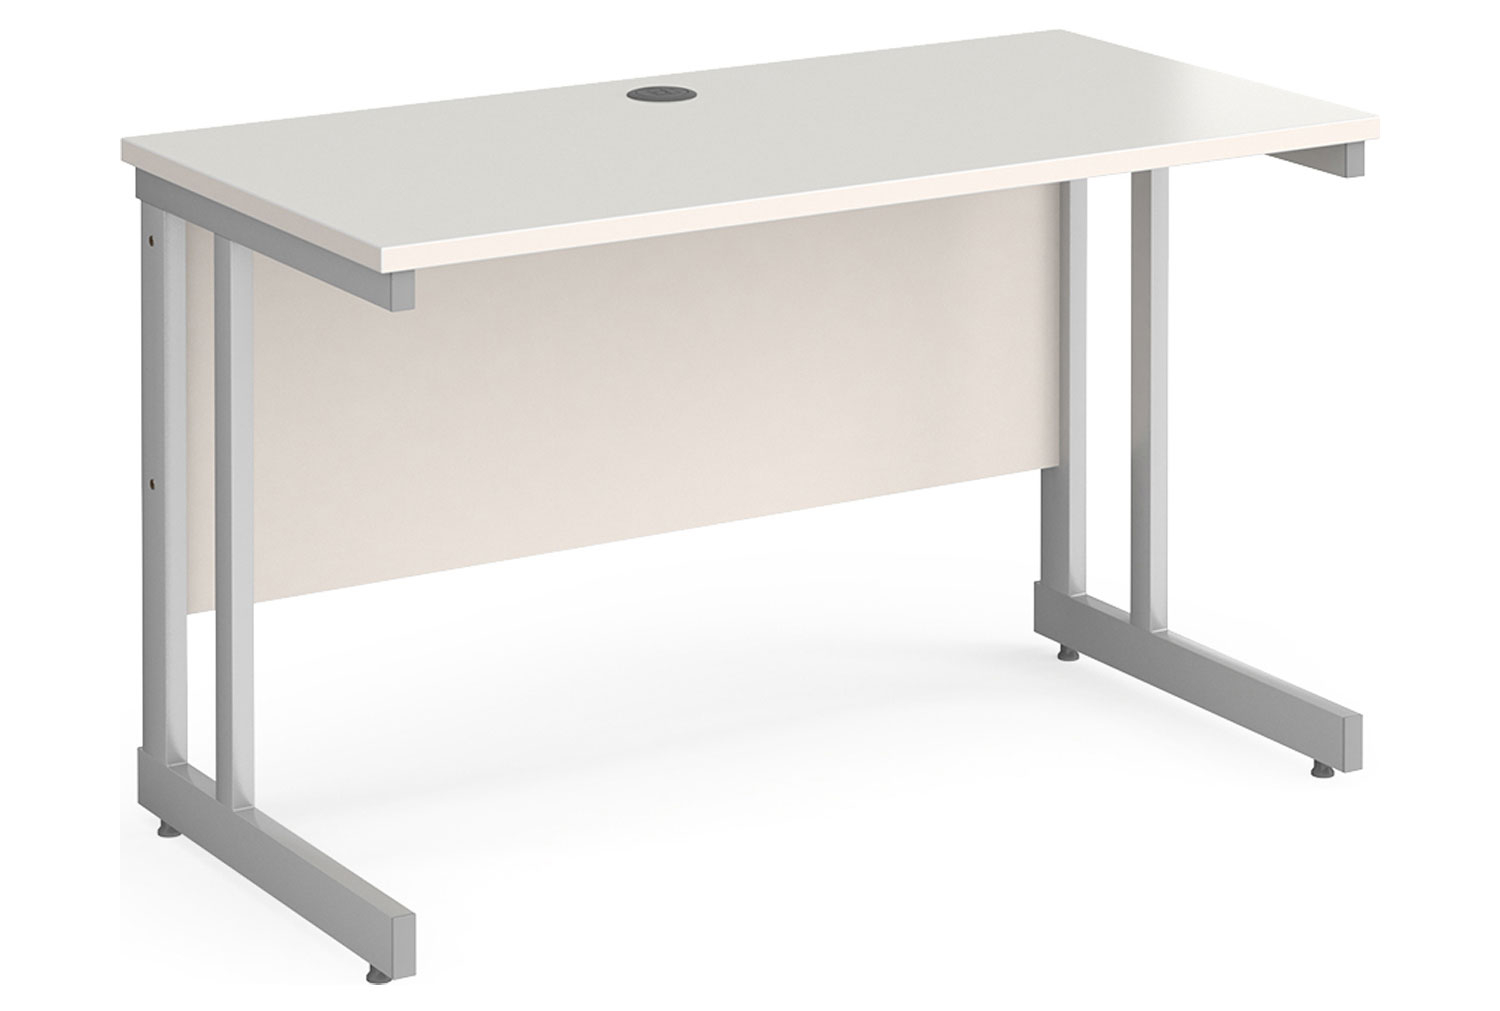 All White Double C-Leg Narrow Rectangular Office Desk, 120w60dx73h (cm)